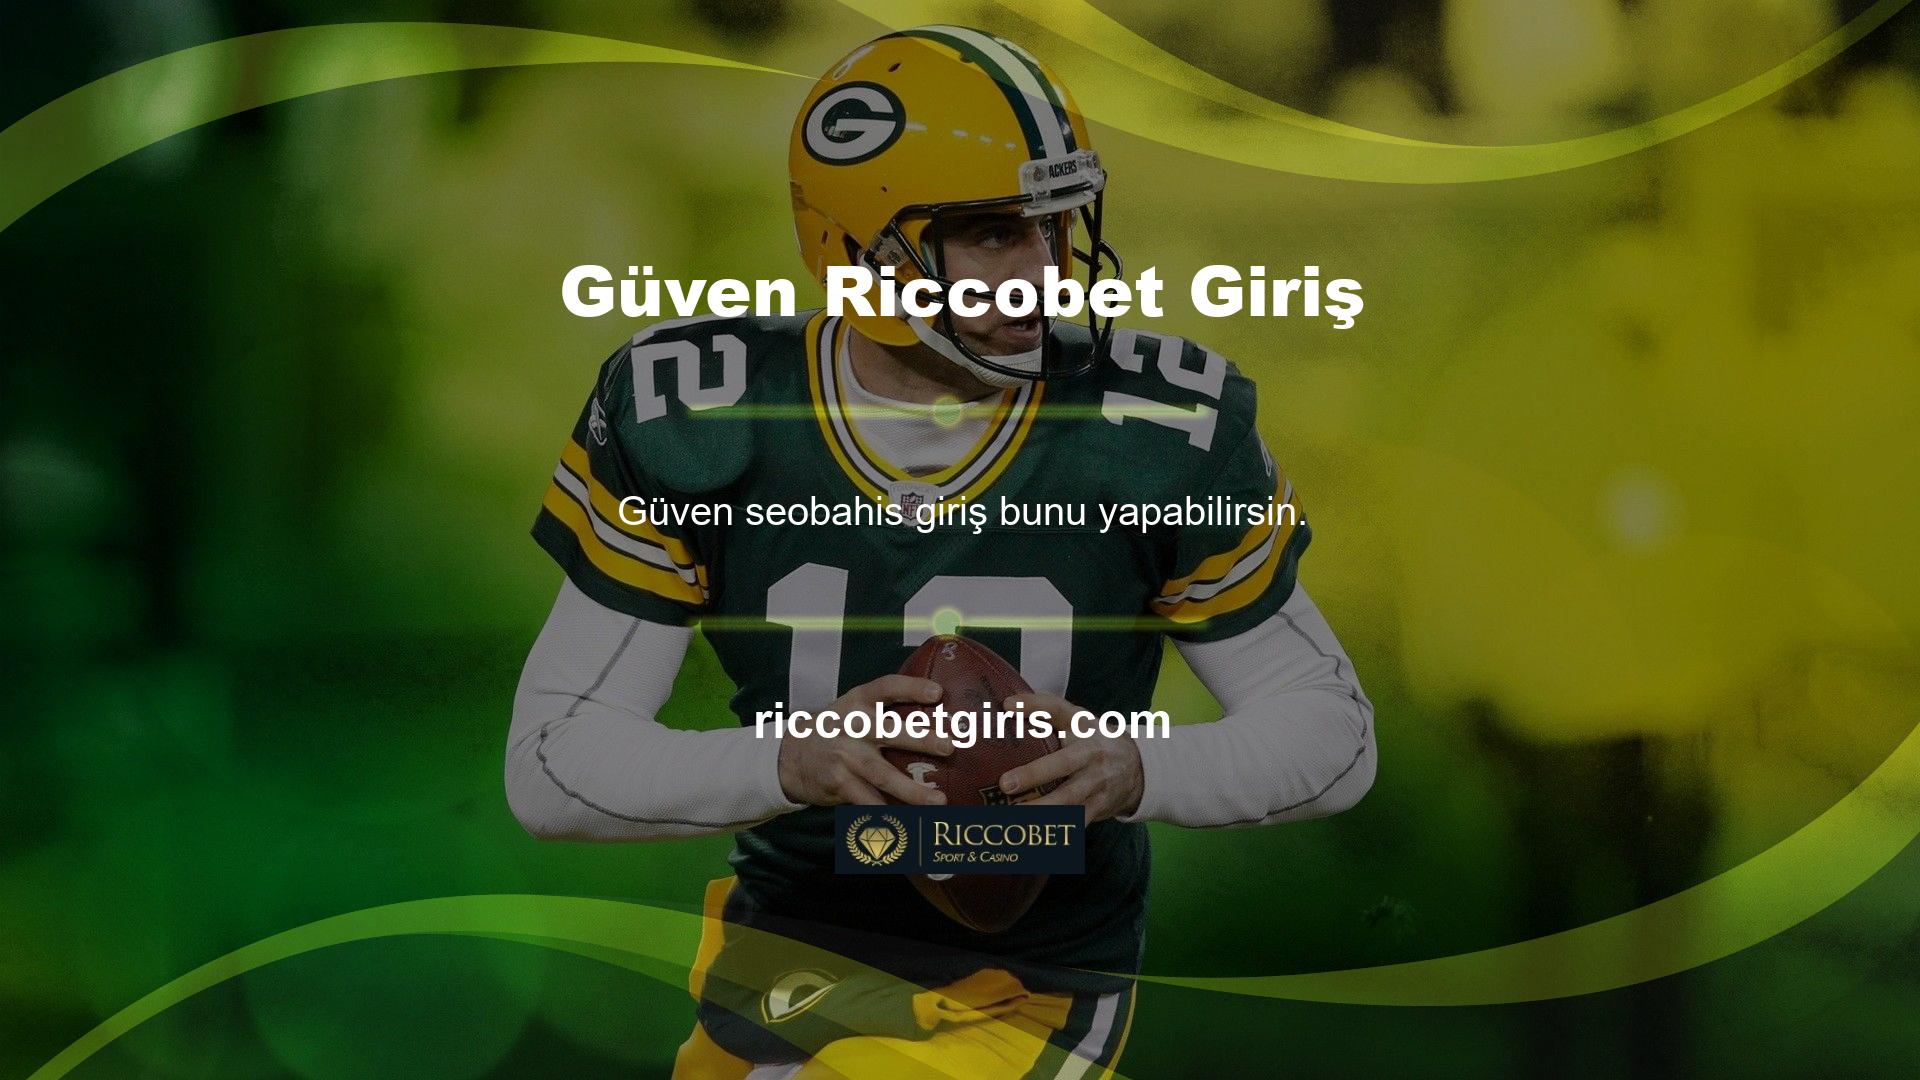 Riccobet, Türkiye'de bahis hizmeti veren bir bahis sitesidir